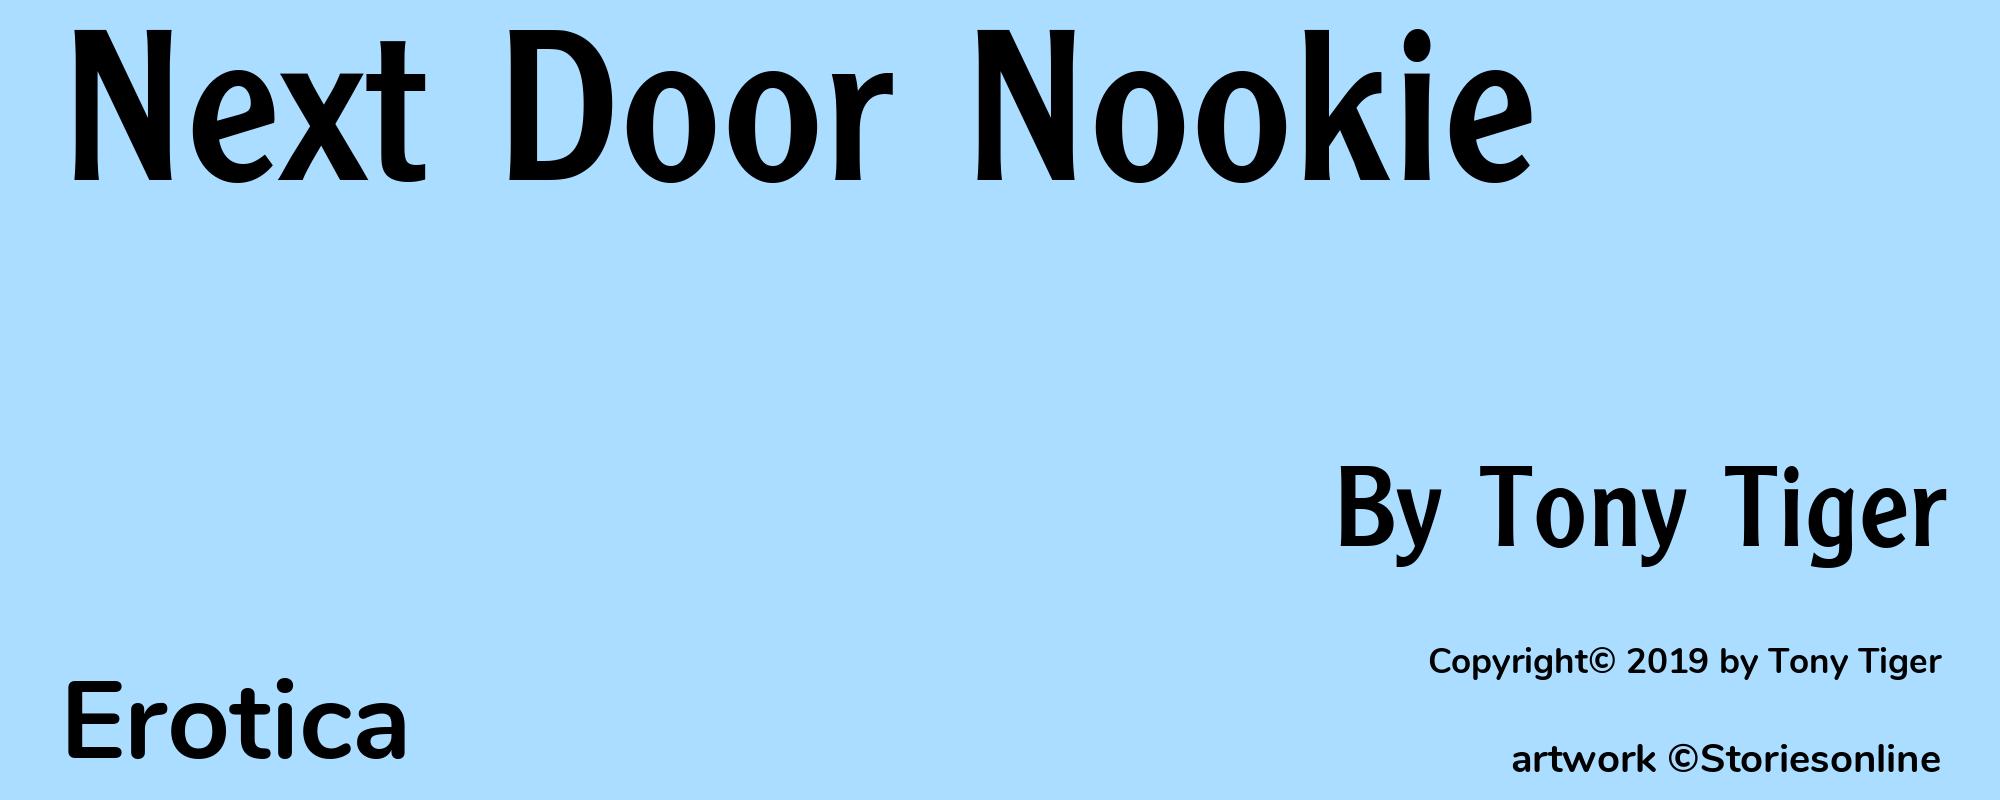 Next Door Nookie - Cover